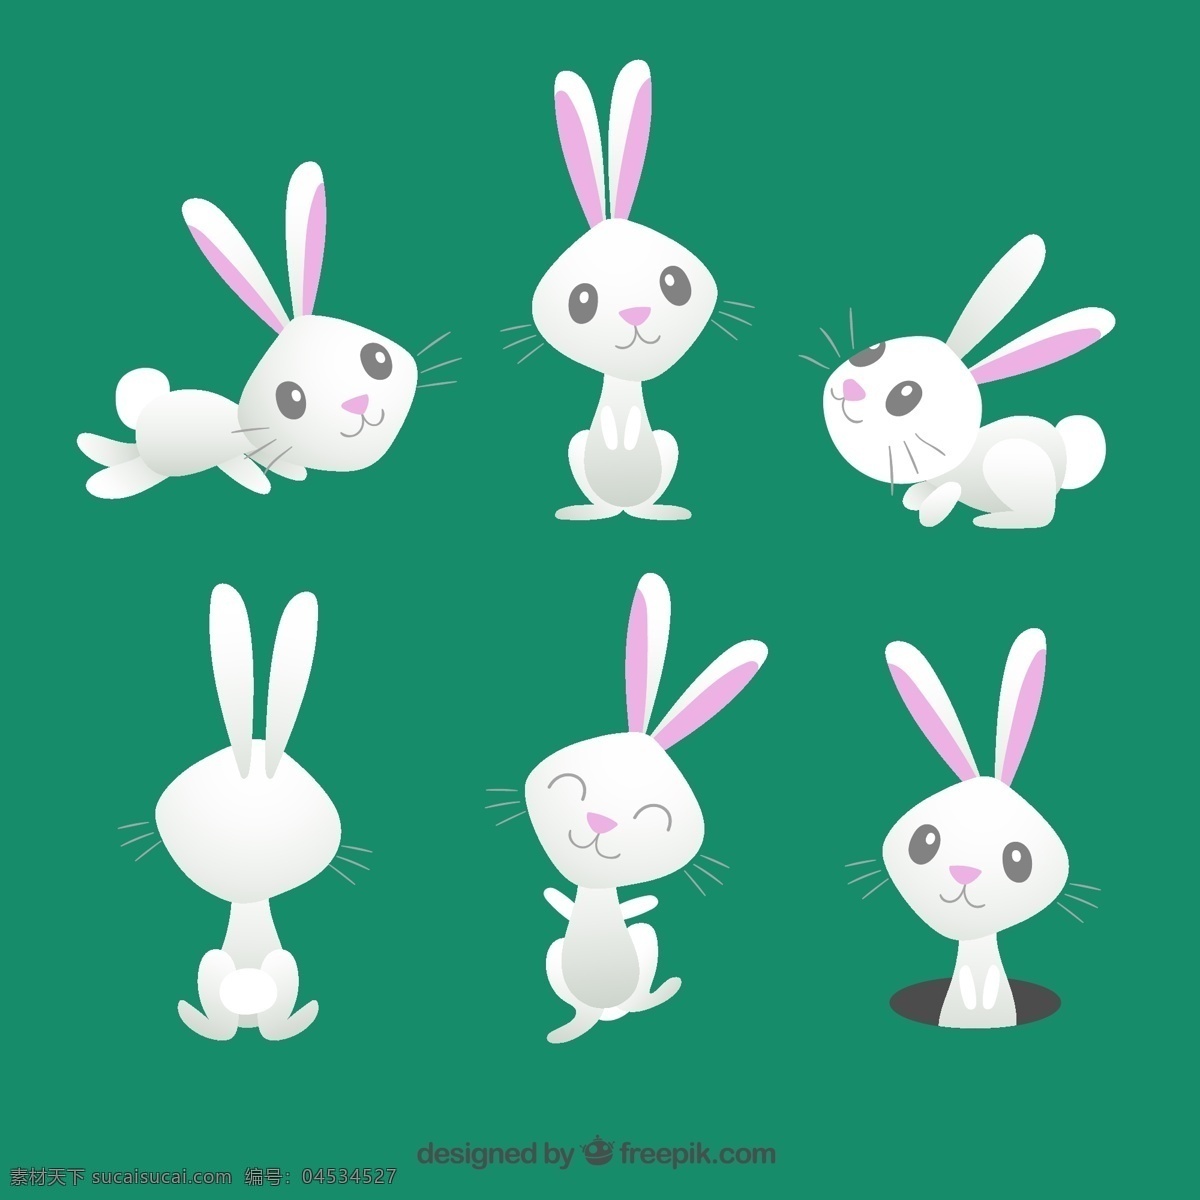 可爱 复活节 兔子 卡通 动物 可爱的节日 复活节的兔子 可爱的动物 卡通动物 青色 天蓝色